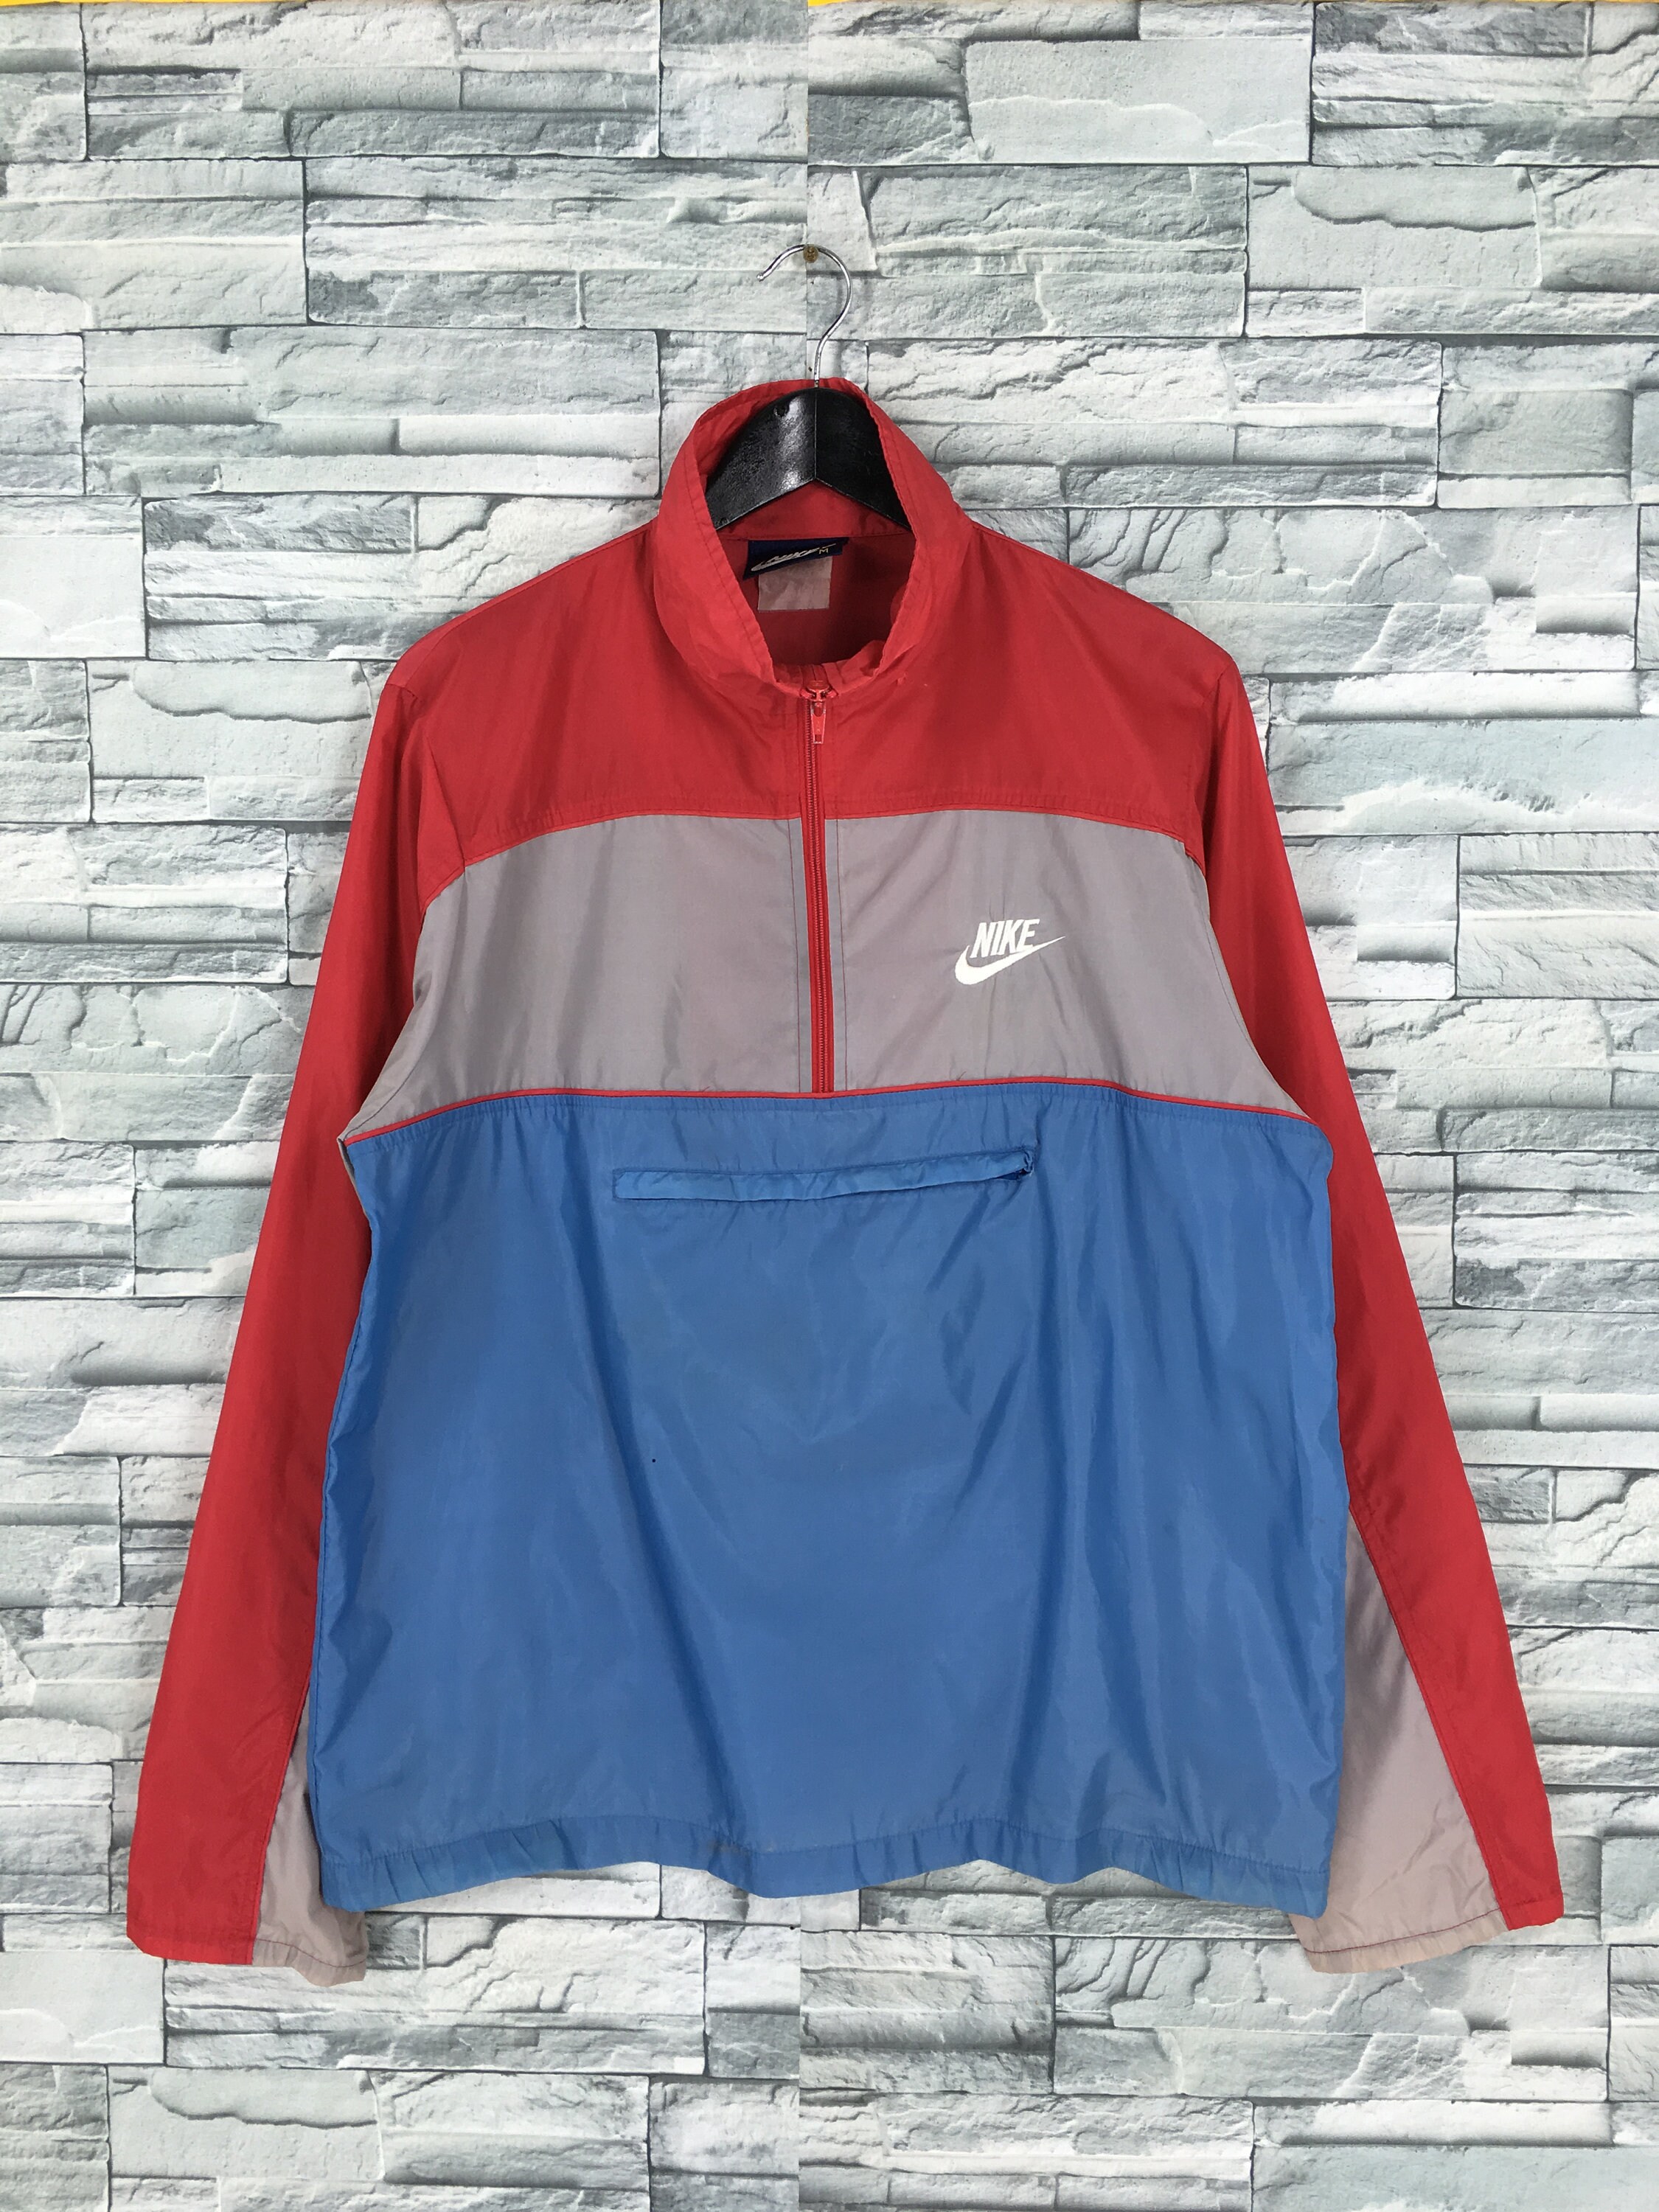 Primer ministro Honesto Petición Vintage 90's Nike Windbreaker Jacket Medium Nike Swoosh - Etsy España